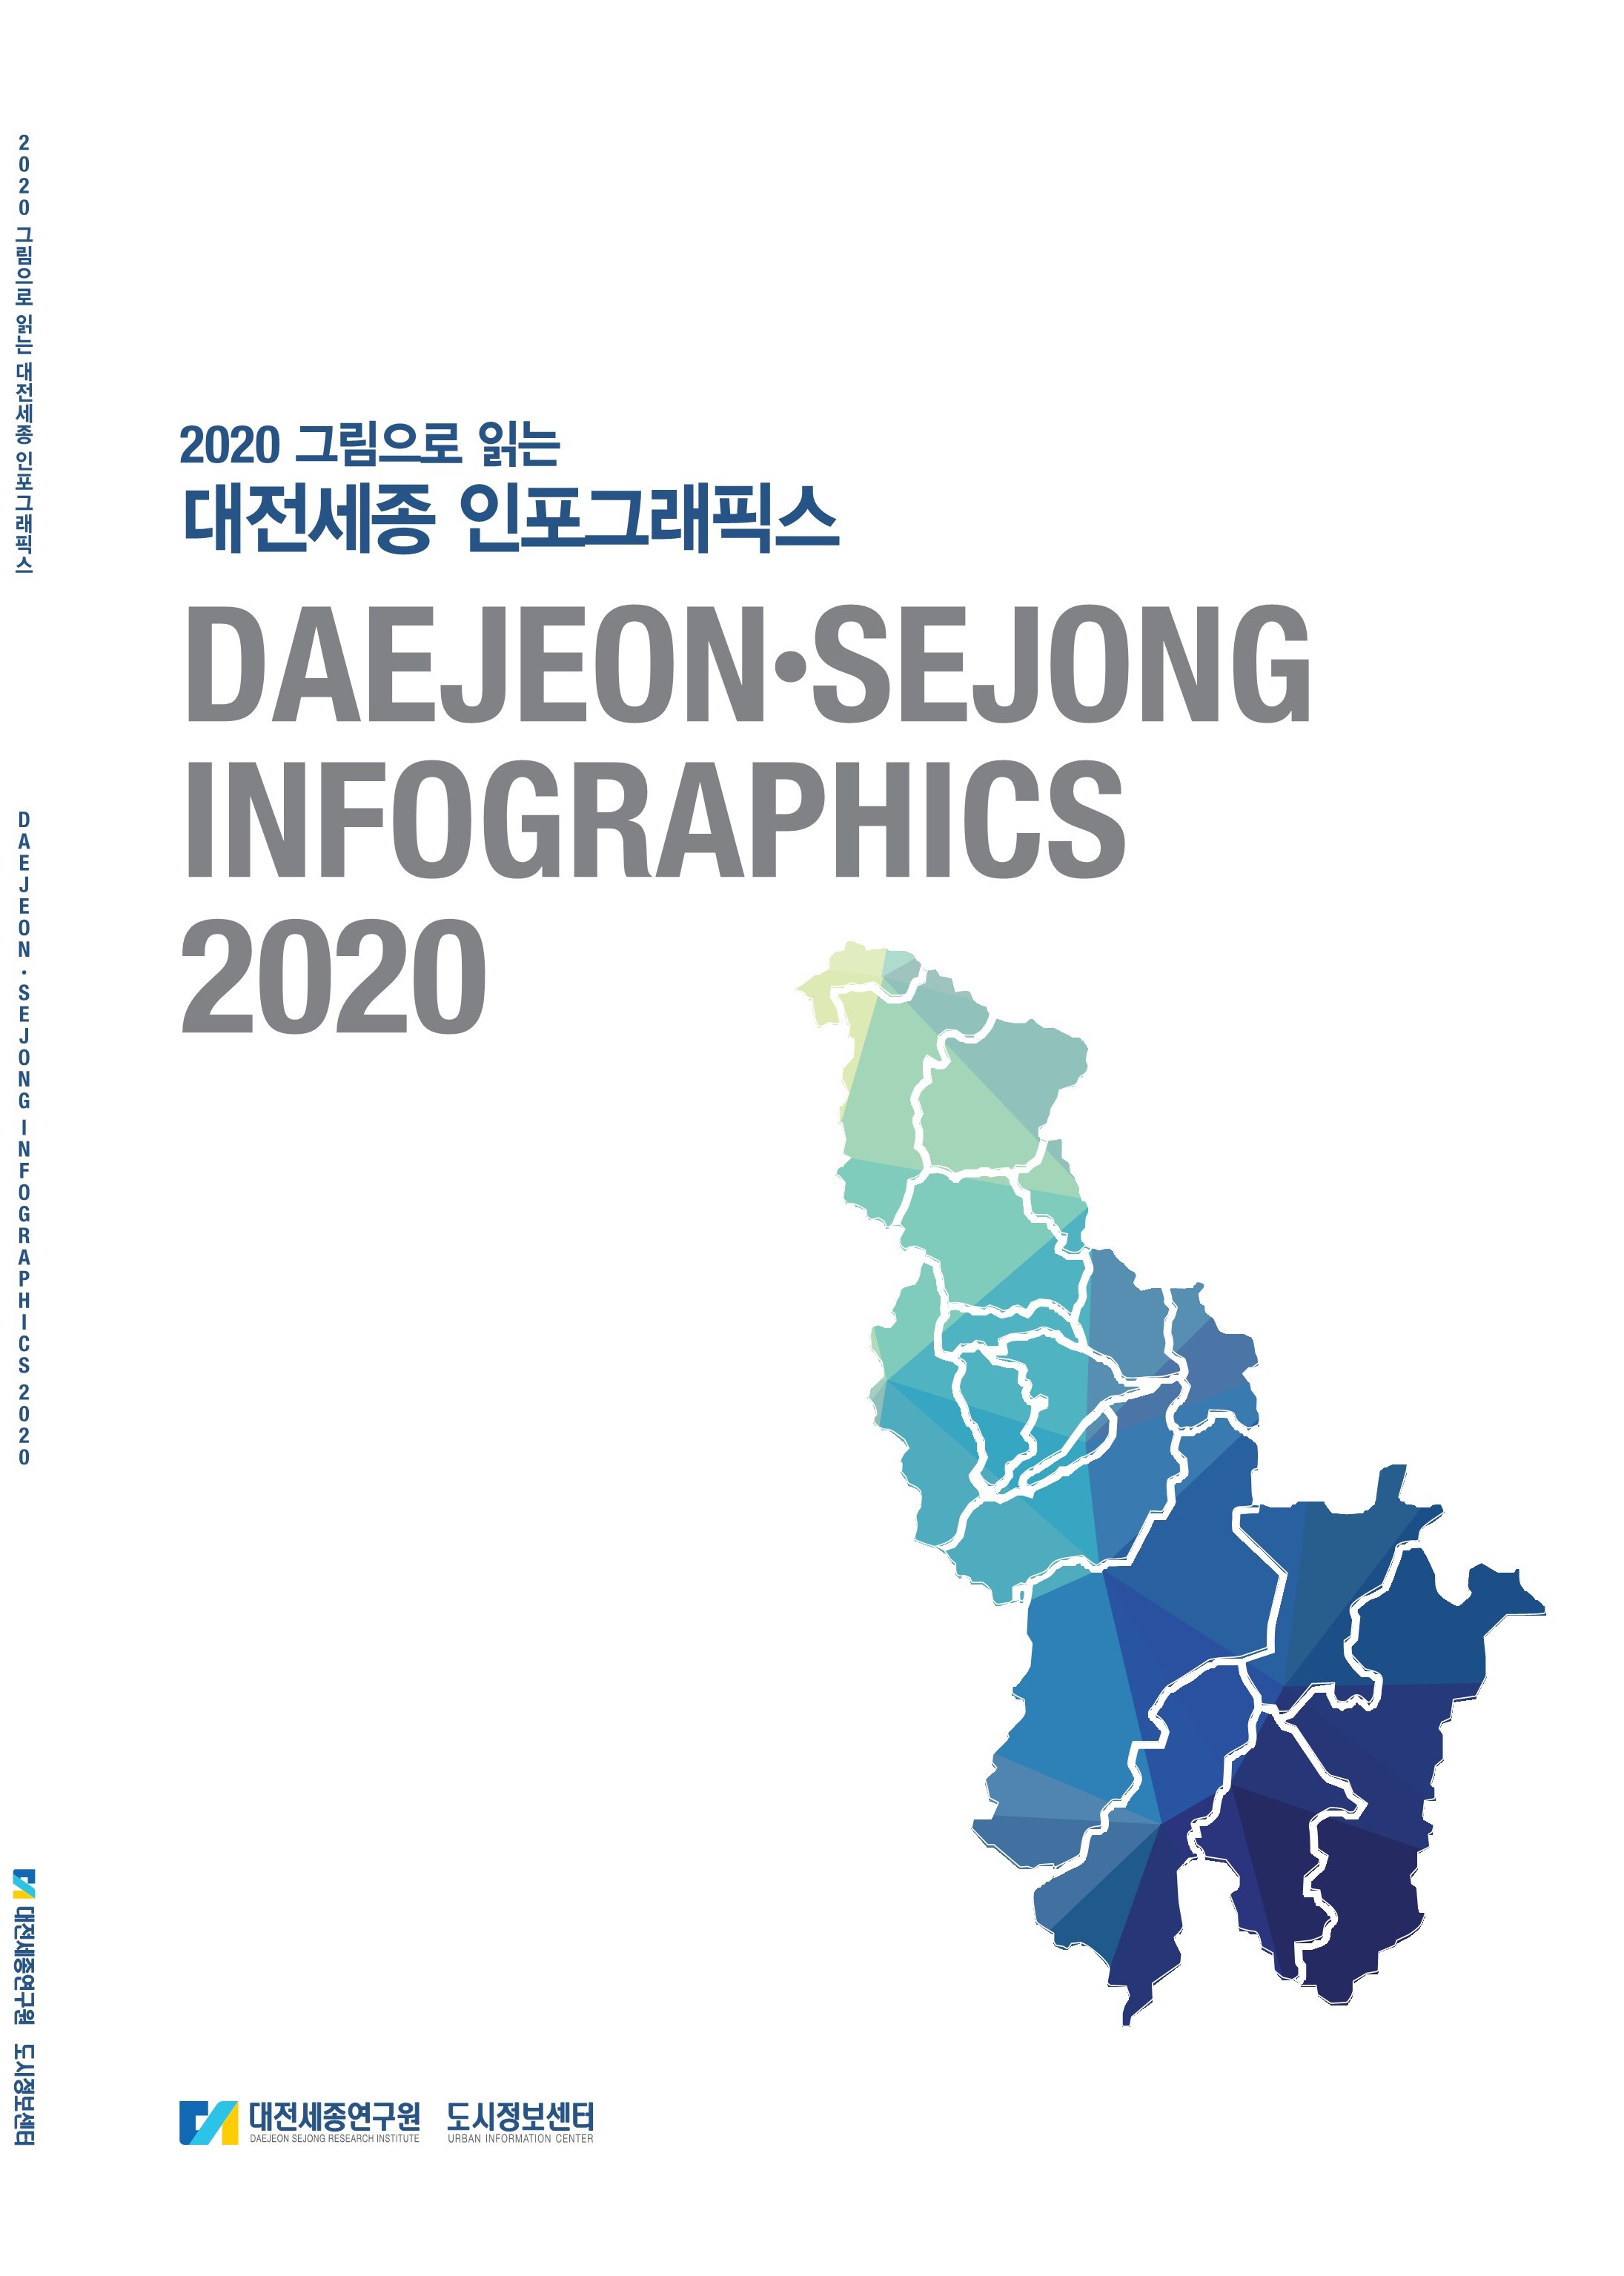 2020 그림으로 읽는 대전세종 인포그래픽스